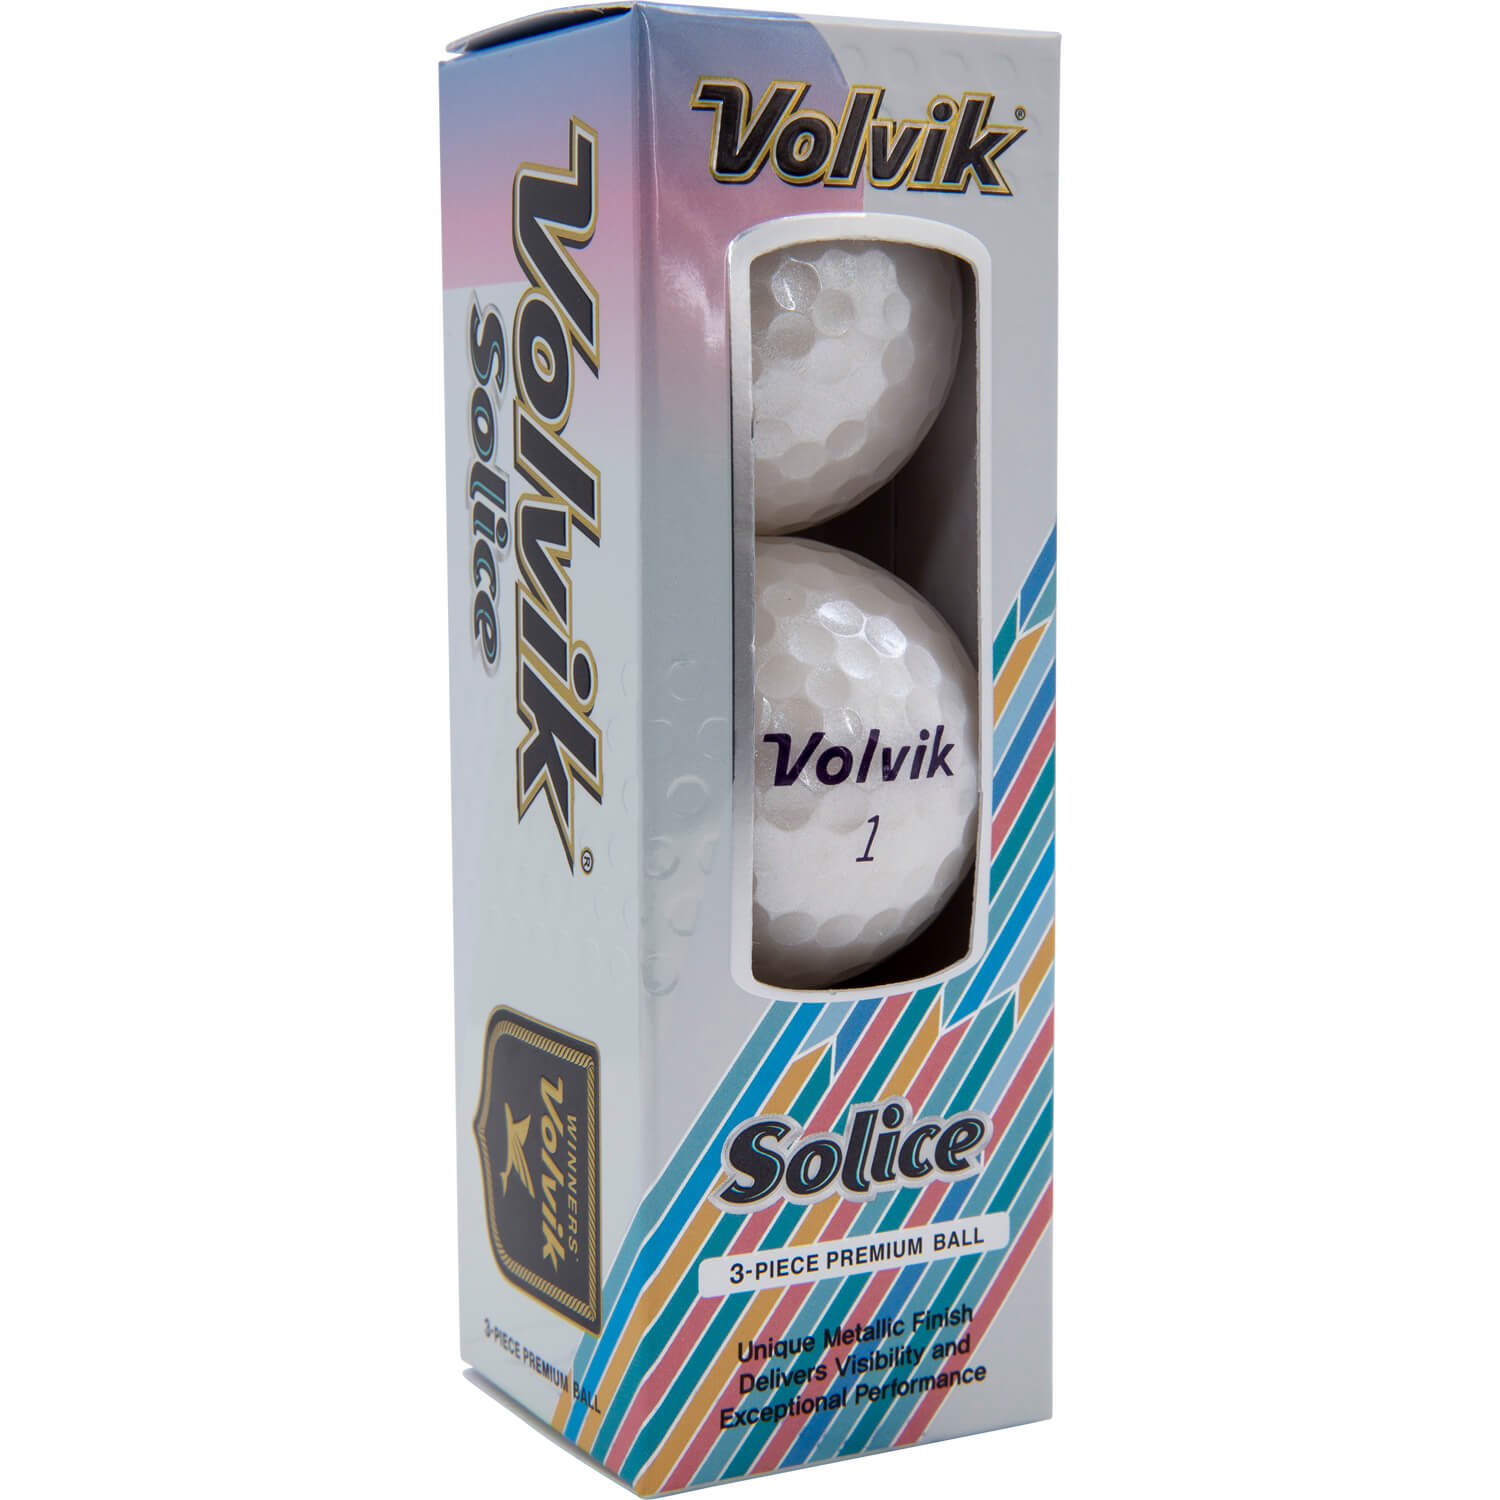 Volvik Solice Metallic Finish white